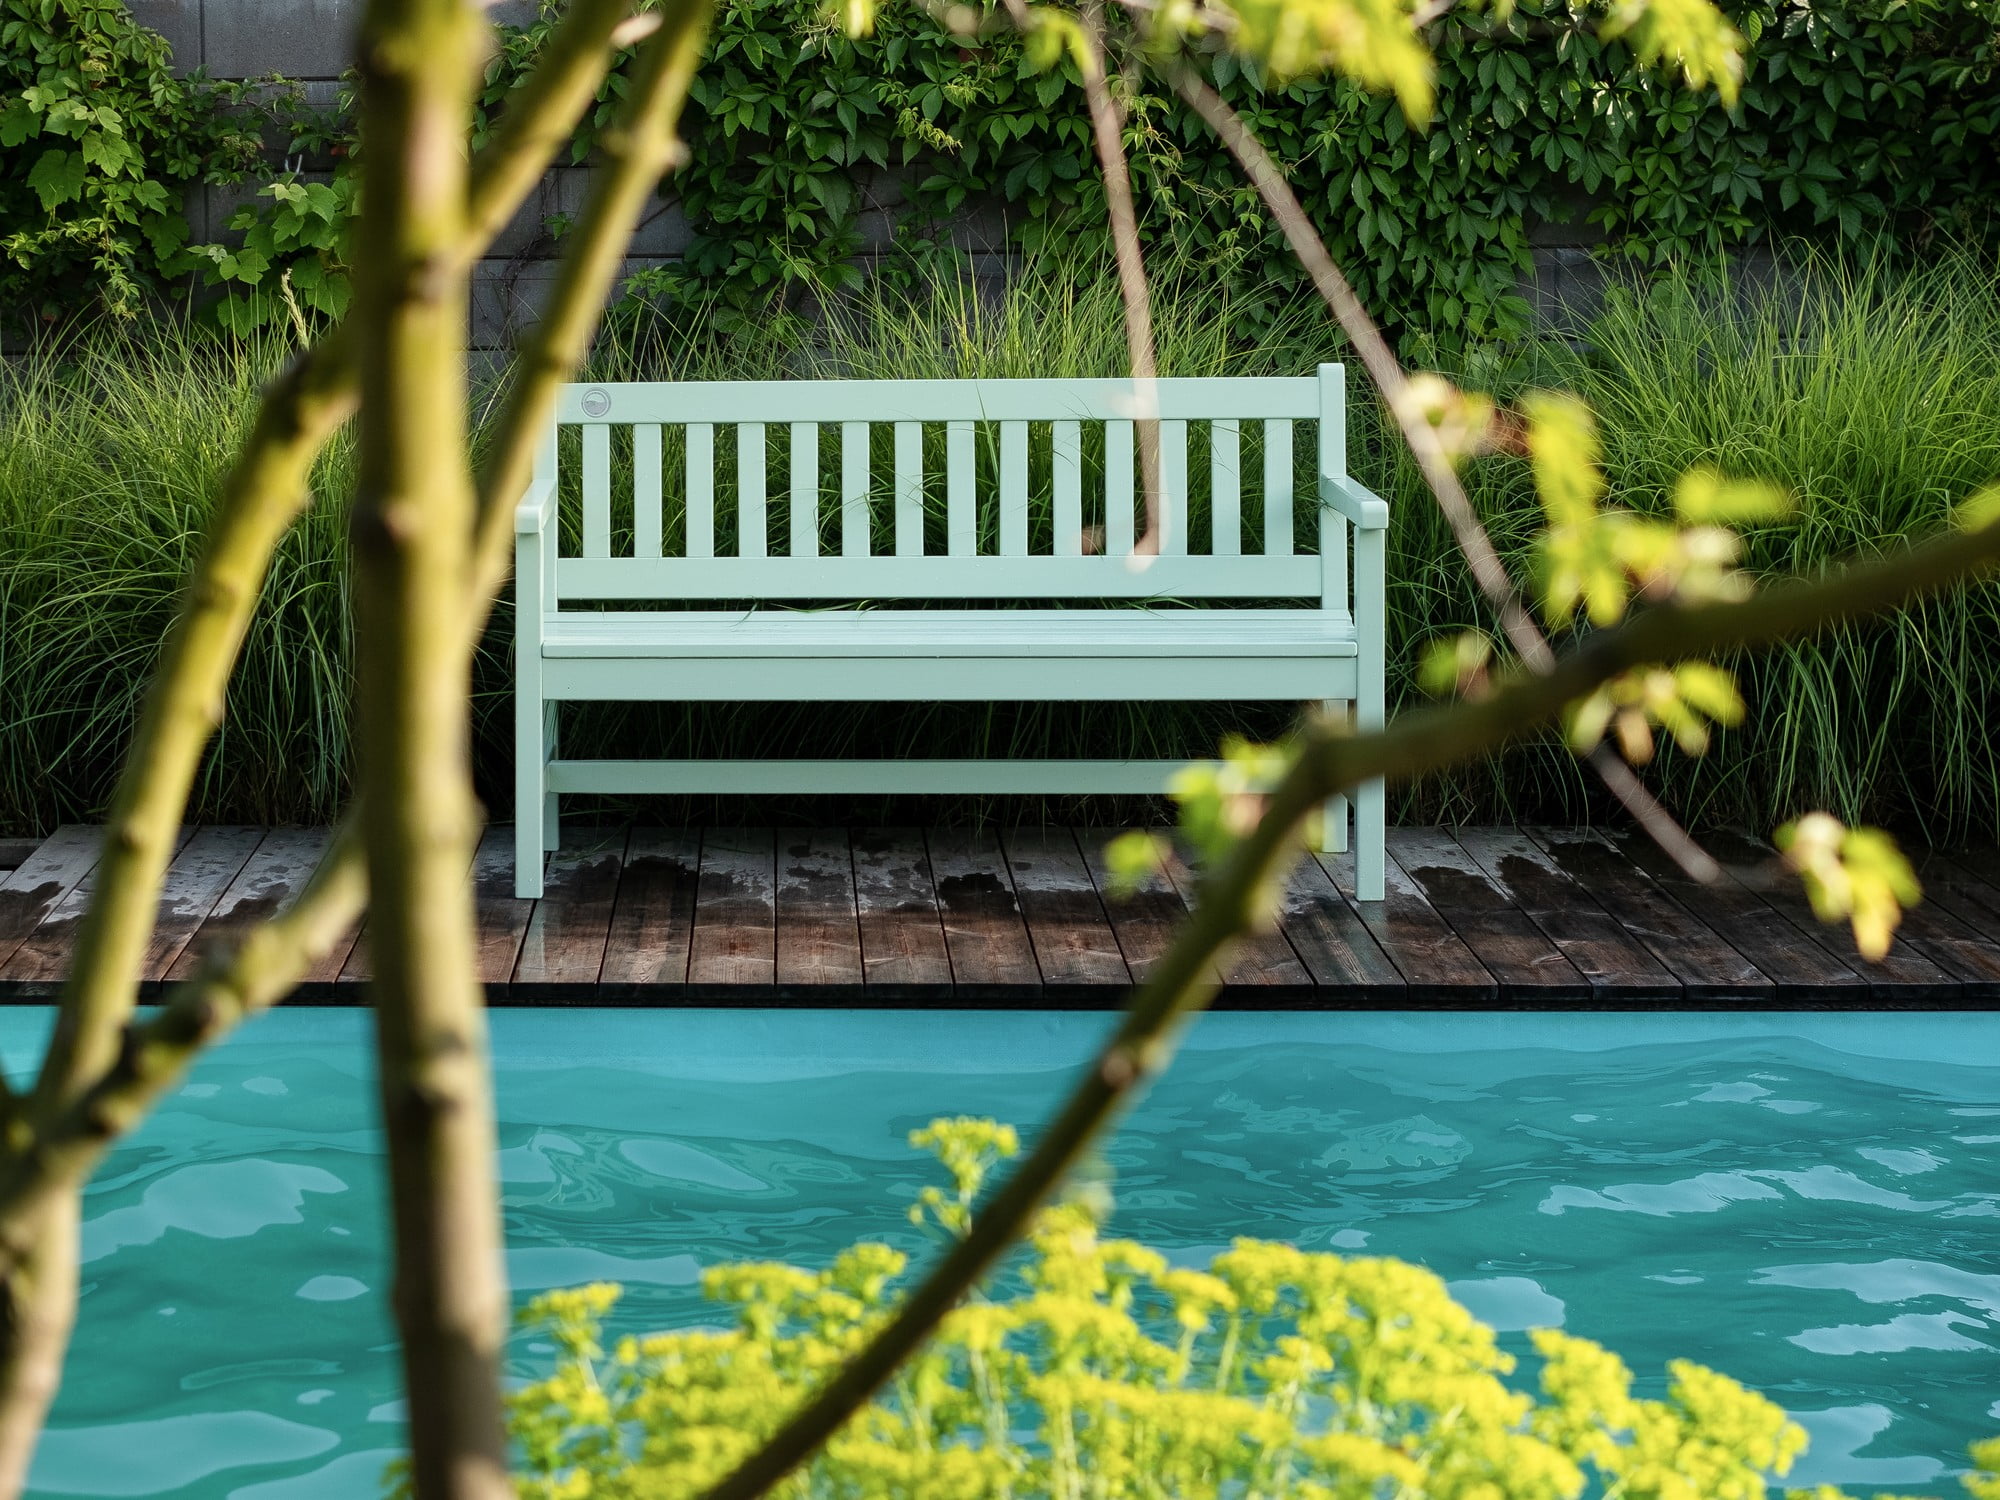 Градината включва различни елементи за отдих, като например пейки.